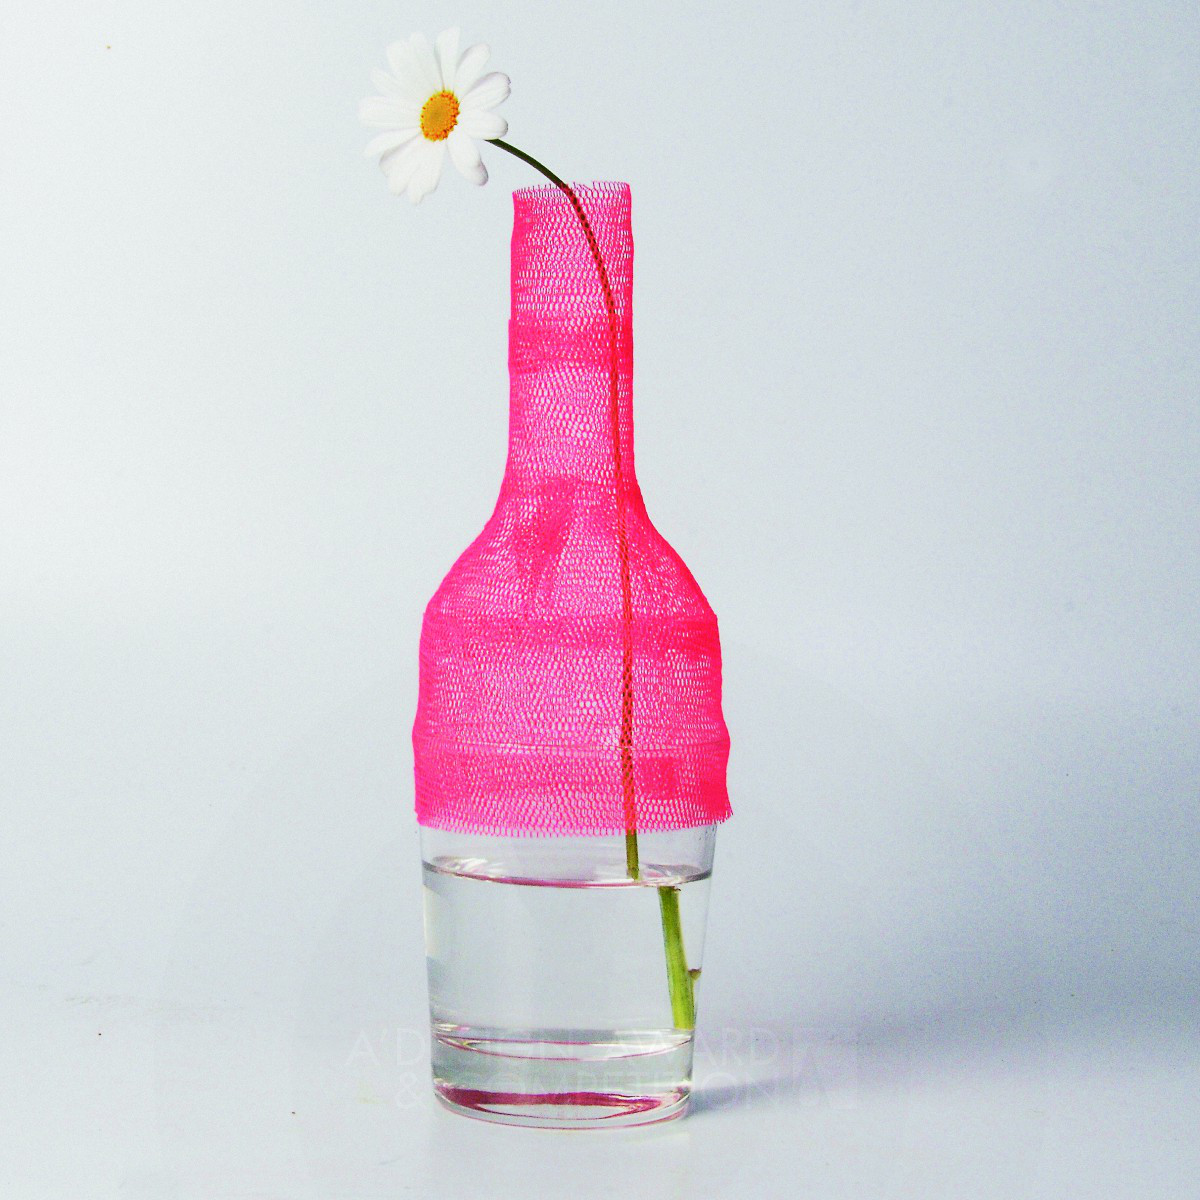 Fragile: A Unique Flower Vase Design